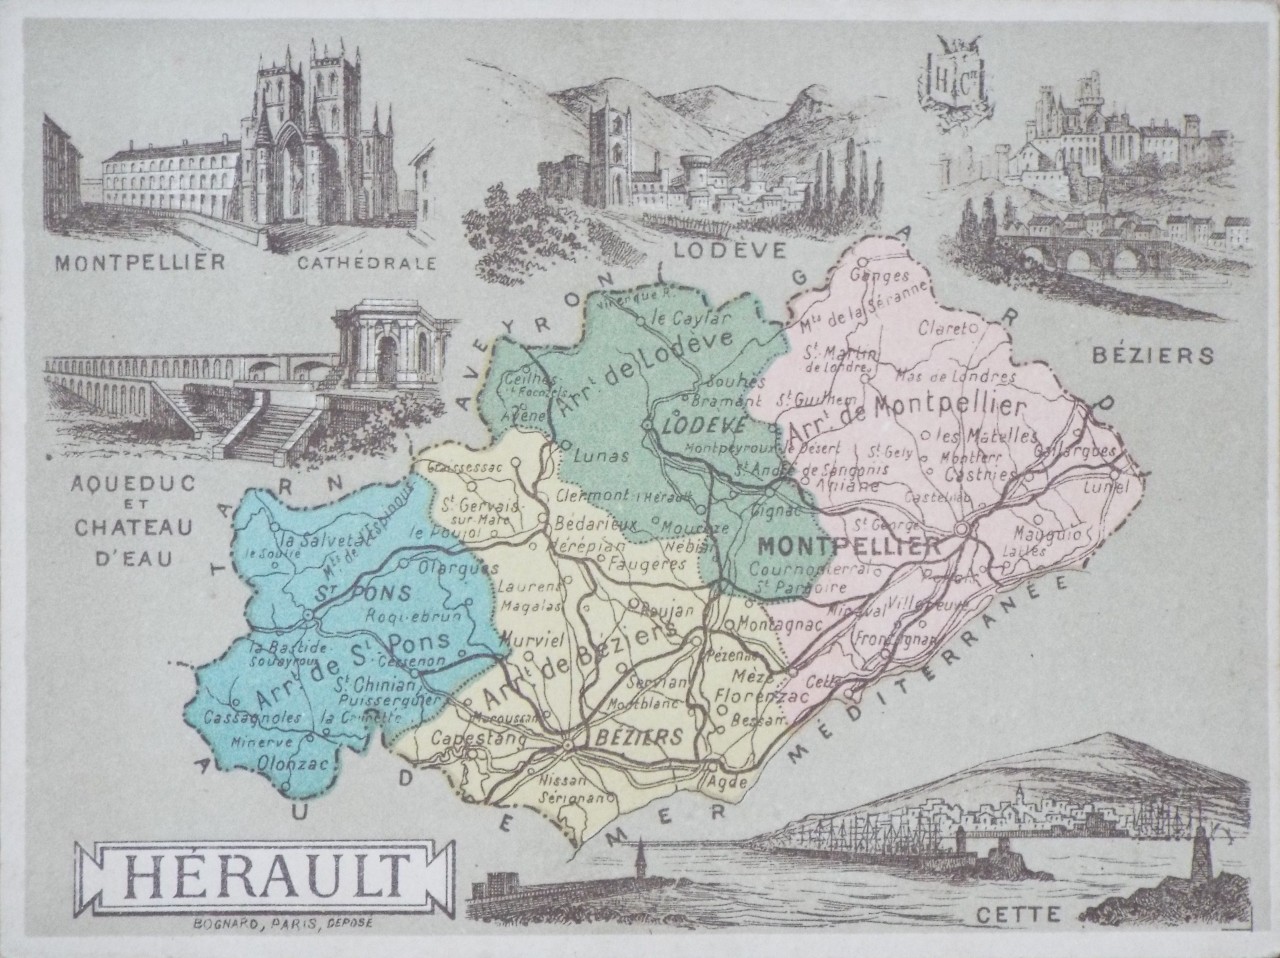 Map of Herault